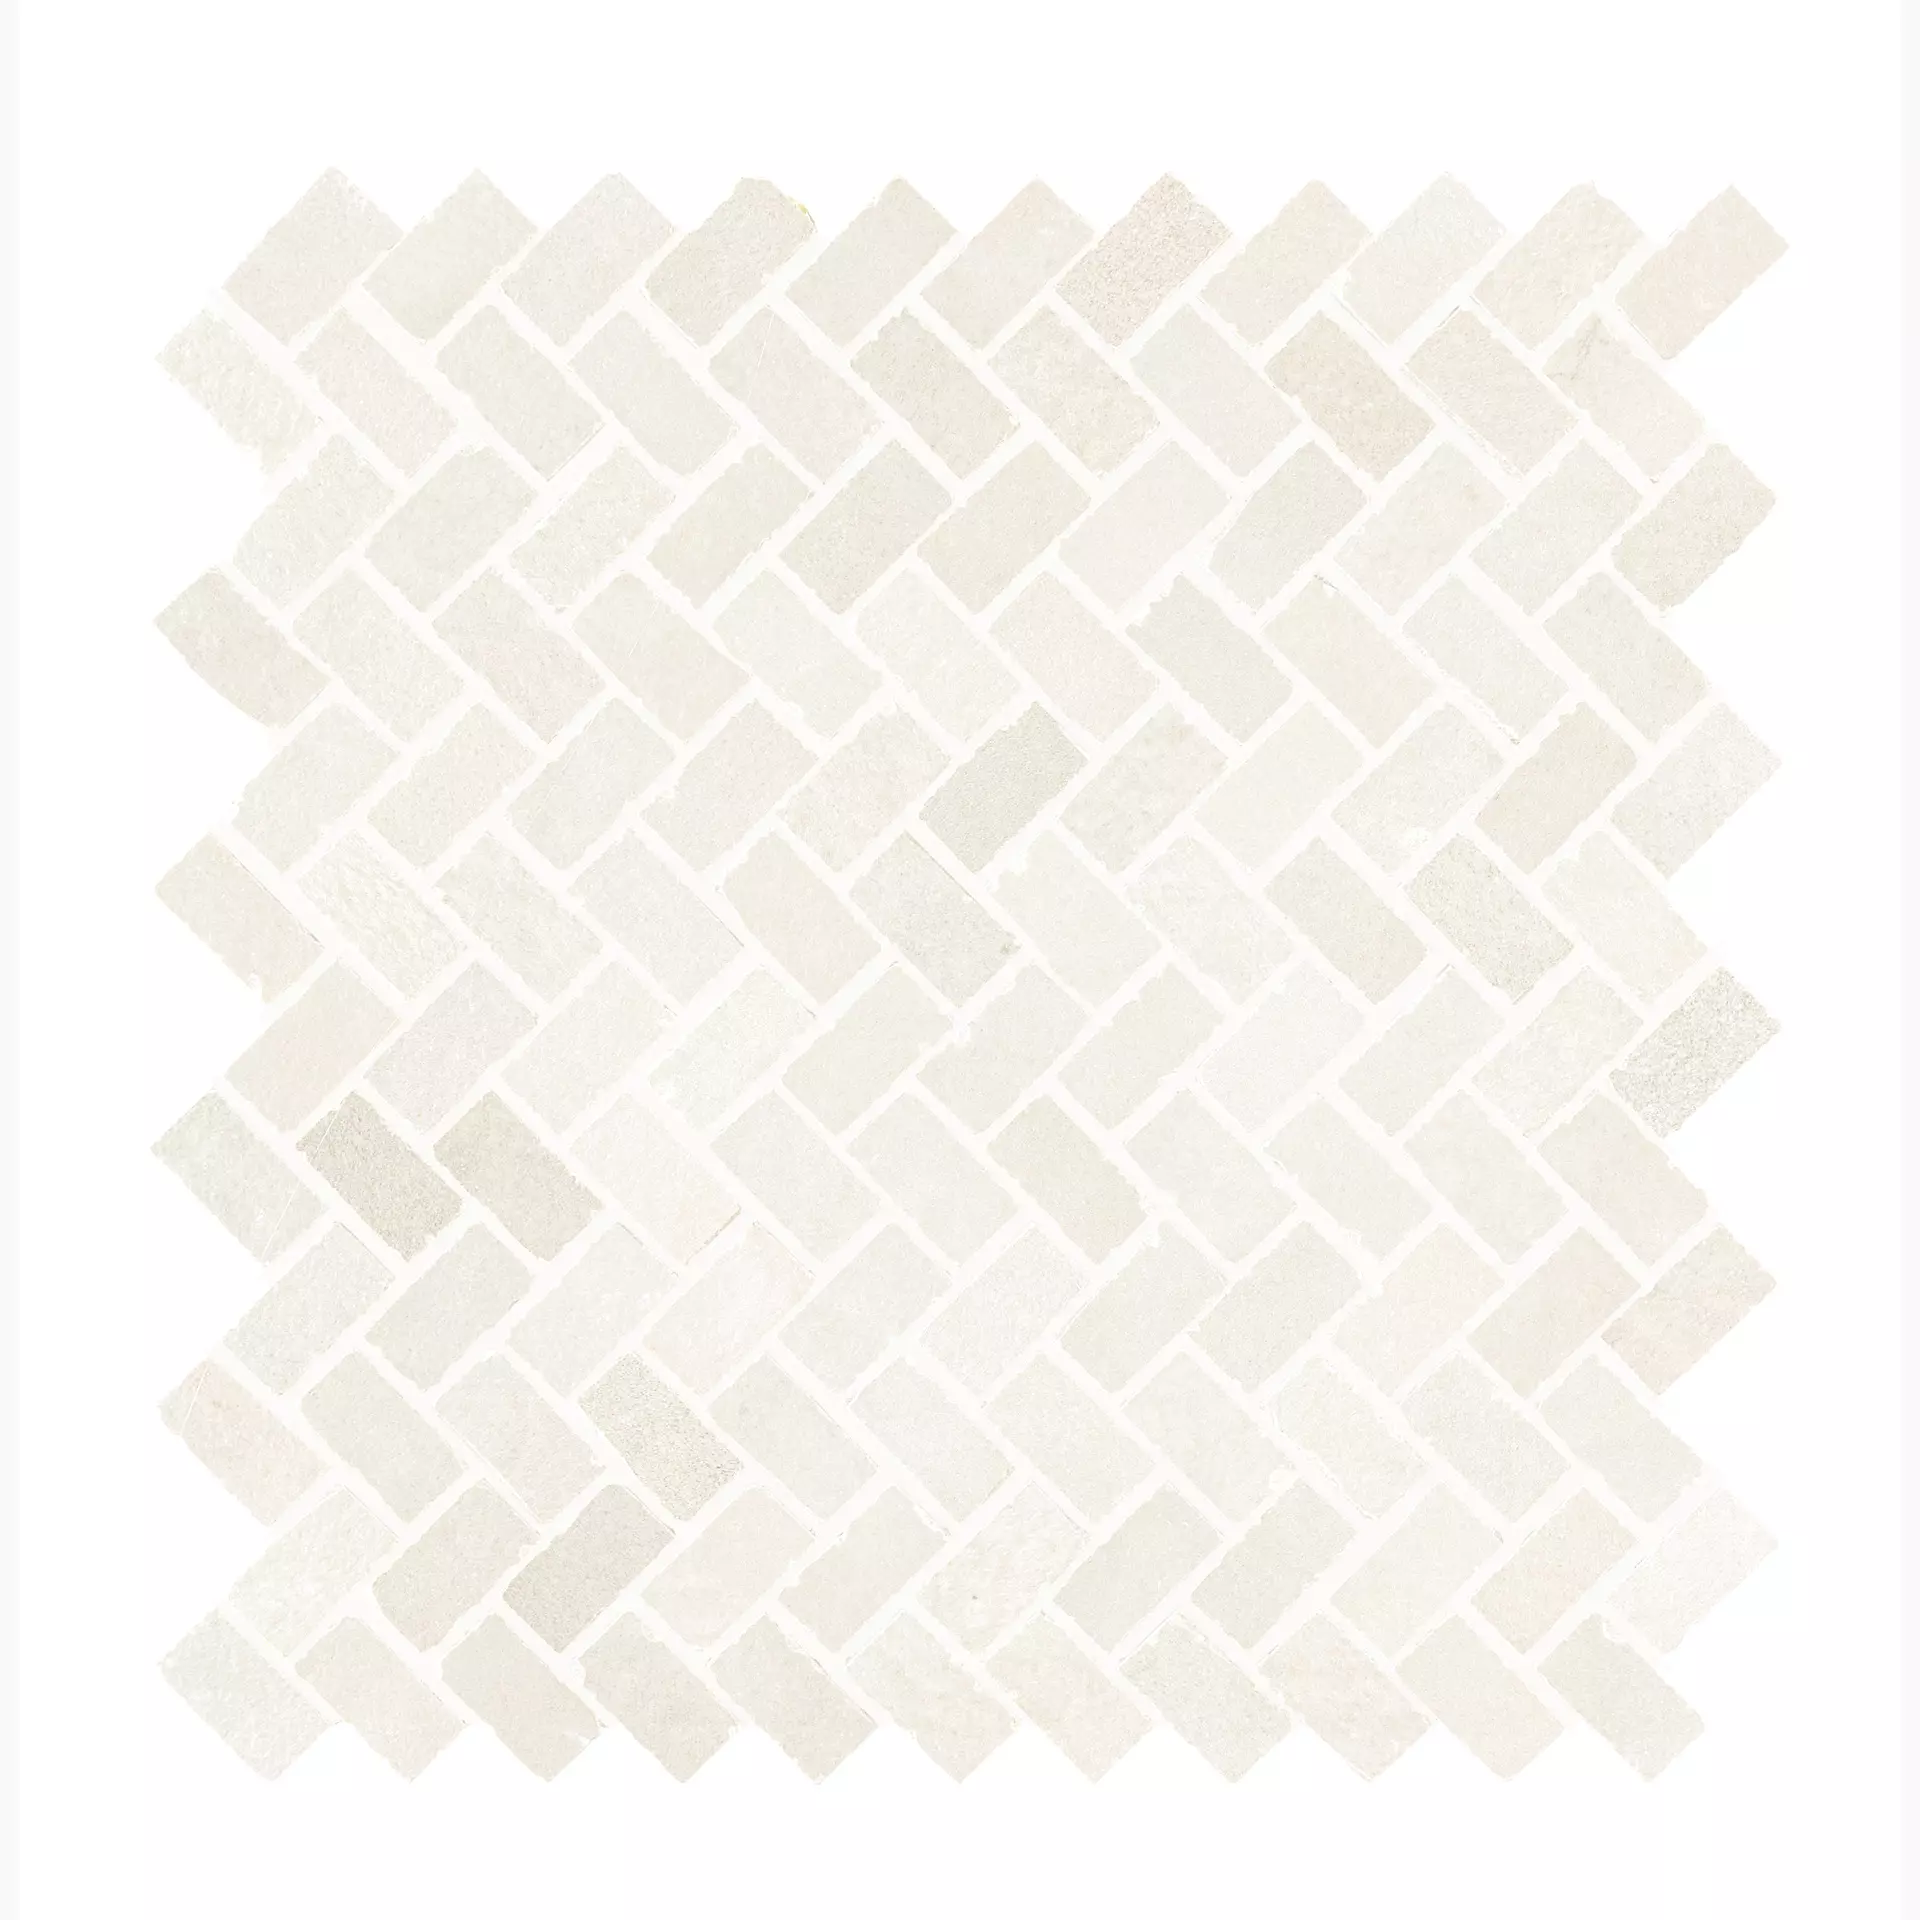 Ragno Stratford White Naturale – Matt Mosaic R93A naturale – matt 30x30cm 10mm